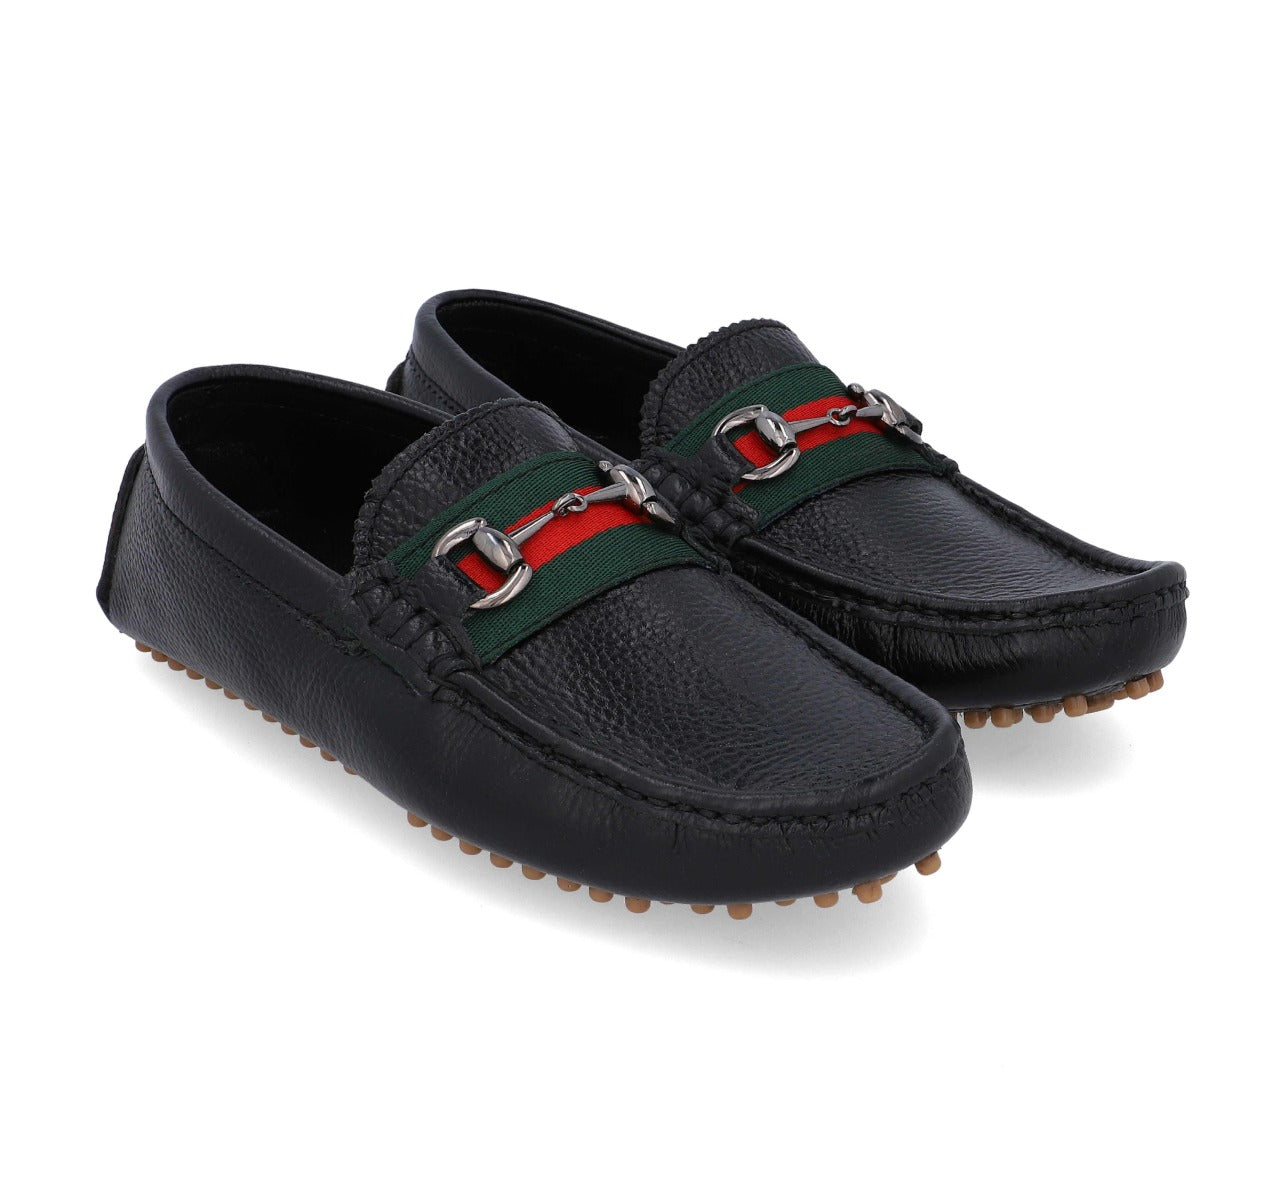 Barefoot Black Loafers Slip On For Men 3660